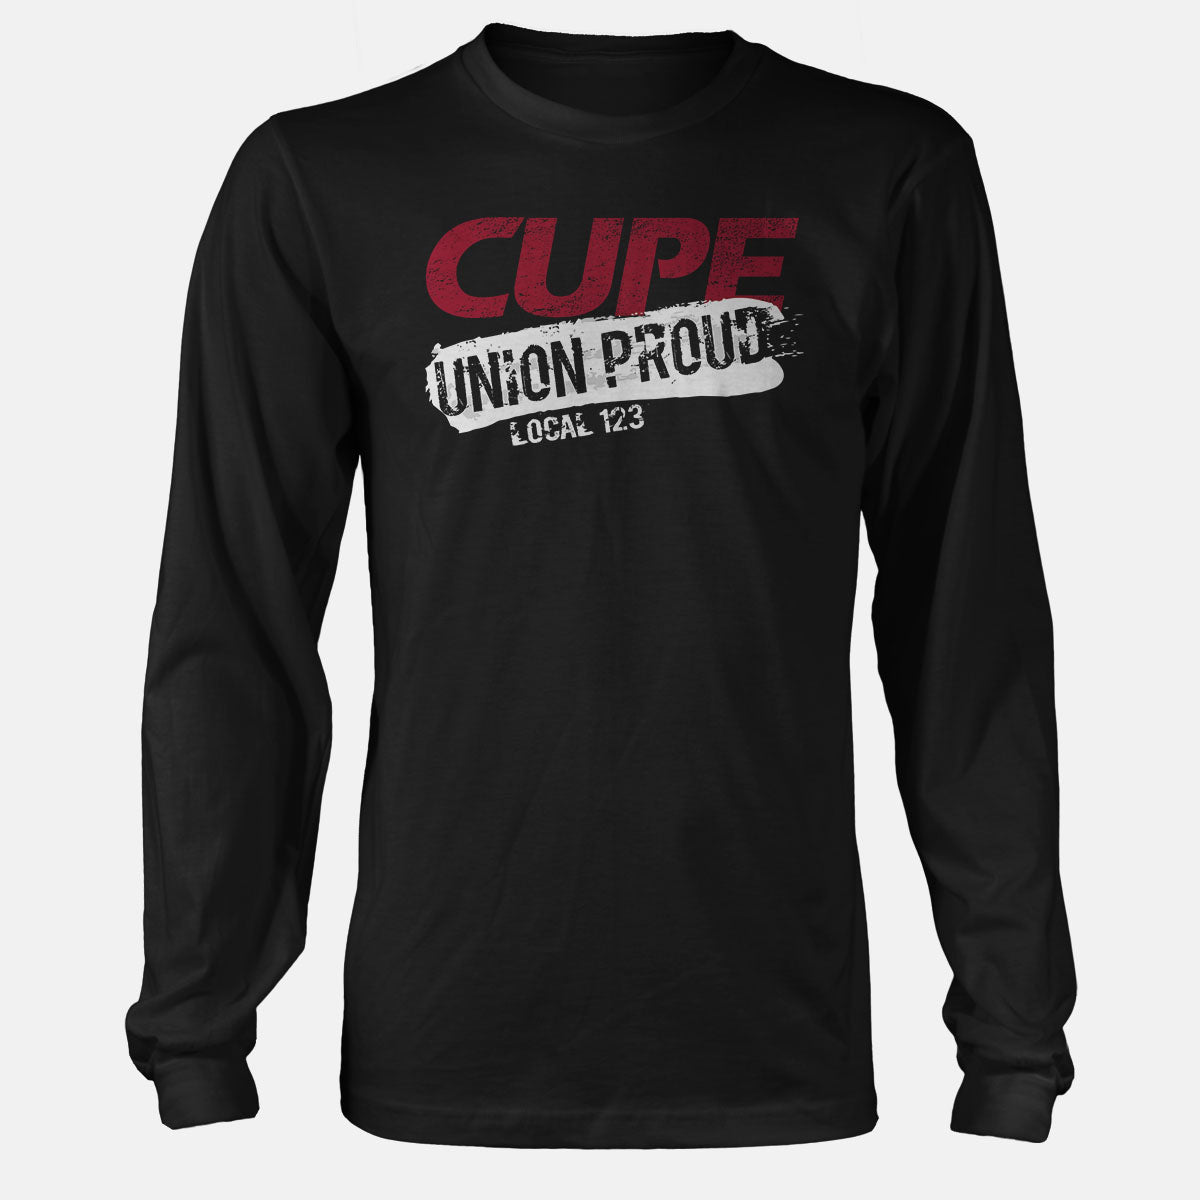 CUPE Union Proud Splatter Apparel